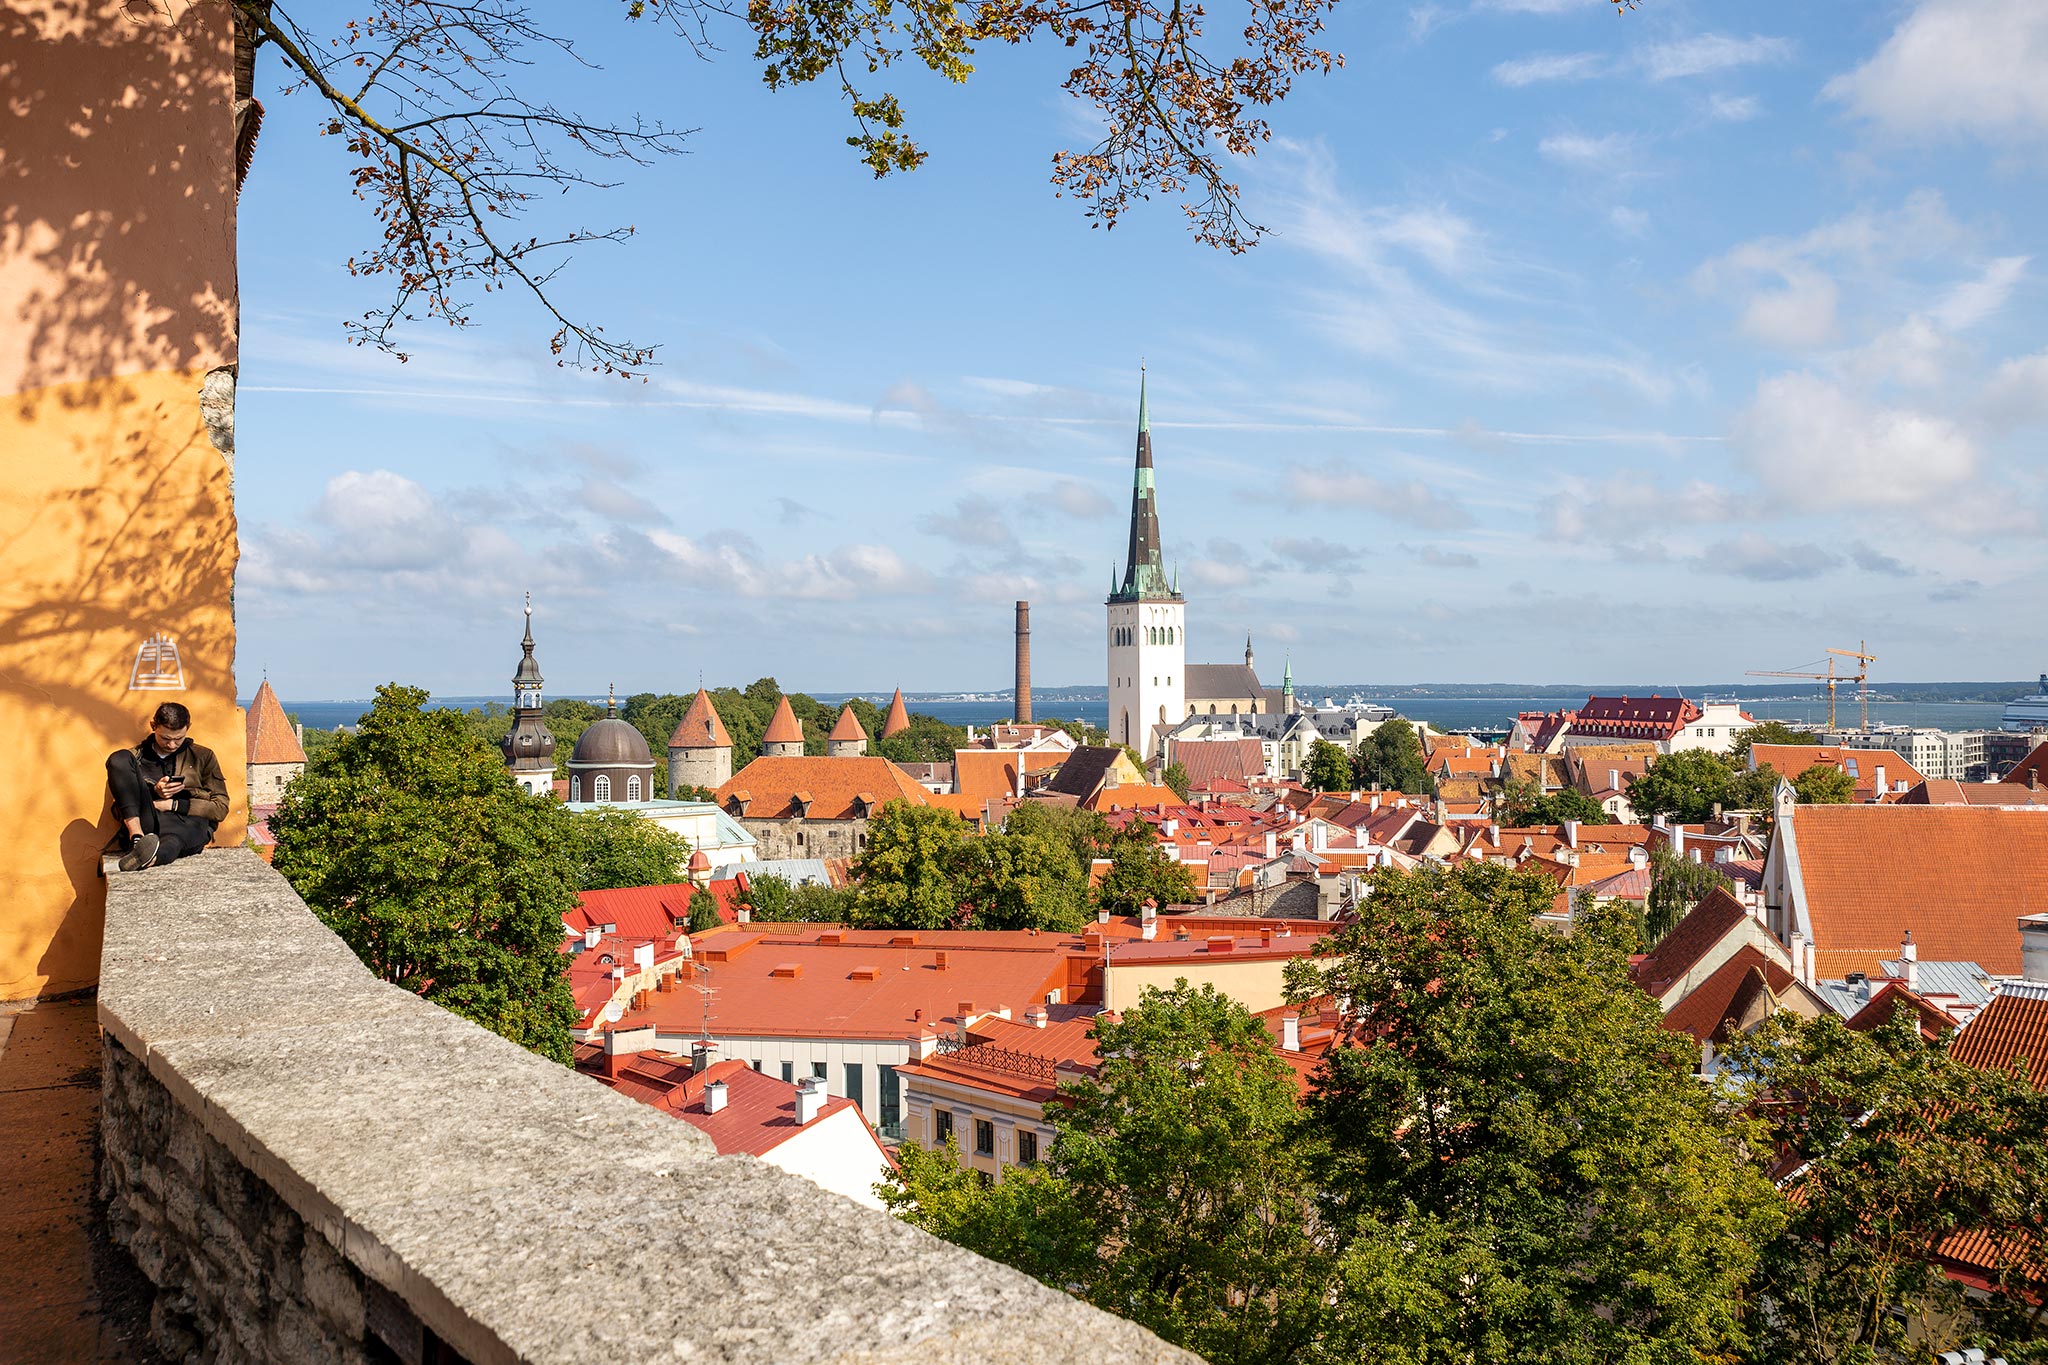 Vanha kaupunki, Tallinna. Kuva © Tuulia Kolehmainen